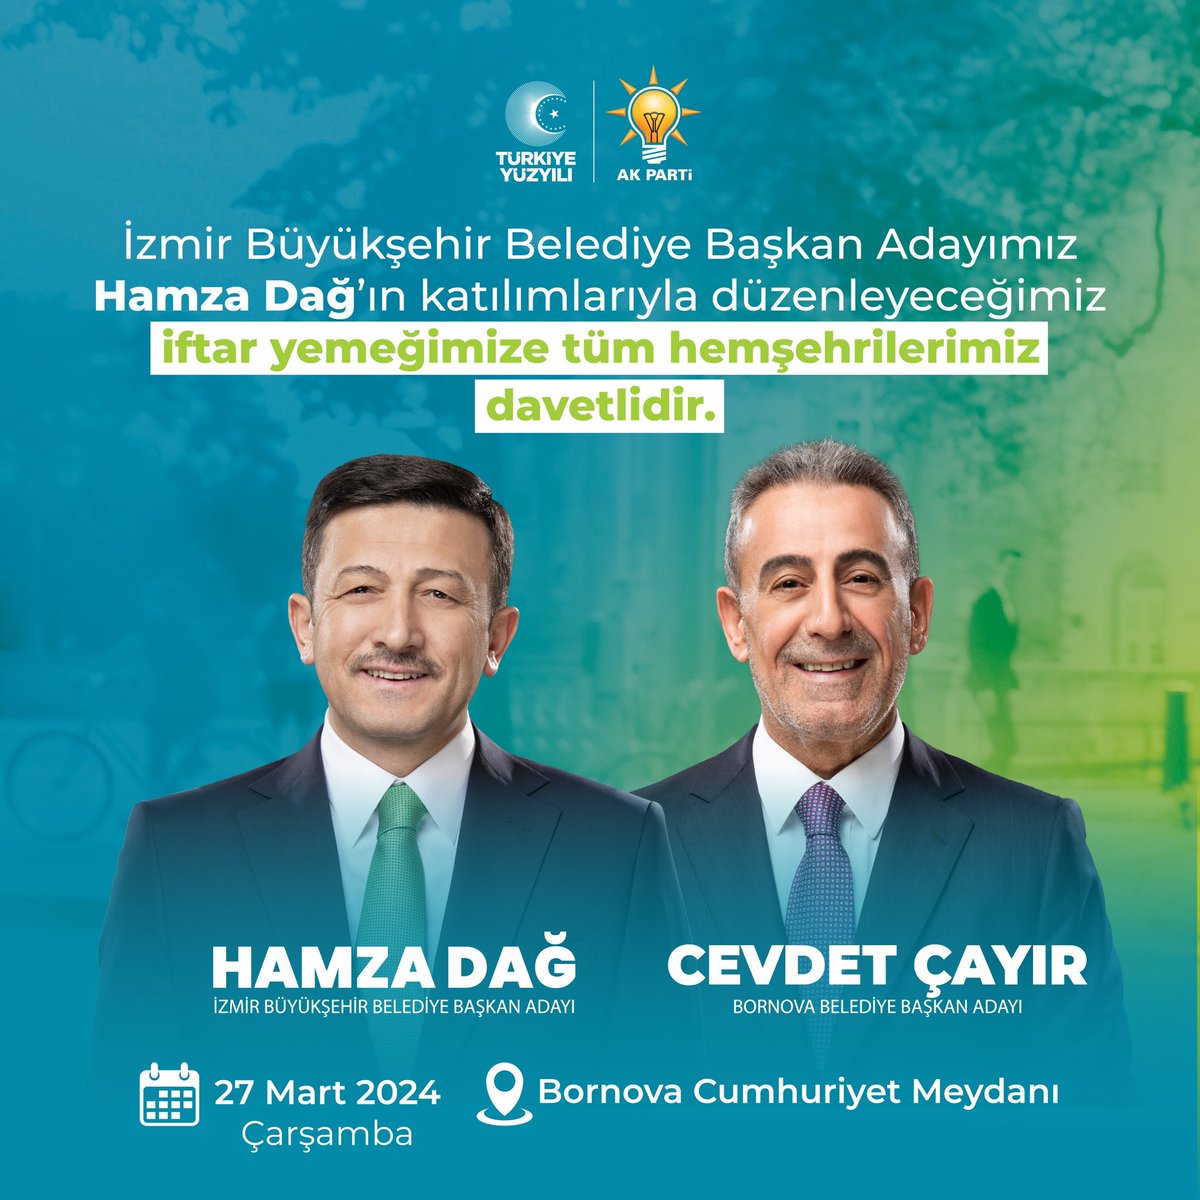 İftar sofrasının bereketini paylaşıyoruz. İzmir Büyükşehir Belediye Başkan Adayımız Sn @avhamzadag'ın katılımlarıyla düzenleyeceğimiz iftar yemeğimize tüm hemşehrilerimiz davetlidir. 🗓 27 Mart Çarşamba 📍 Bornova Cumhuriyet Meydanı